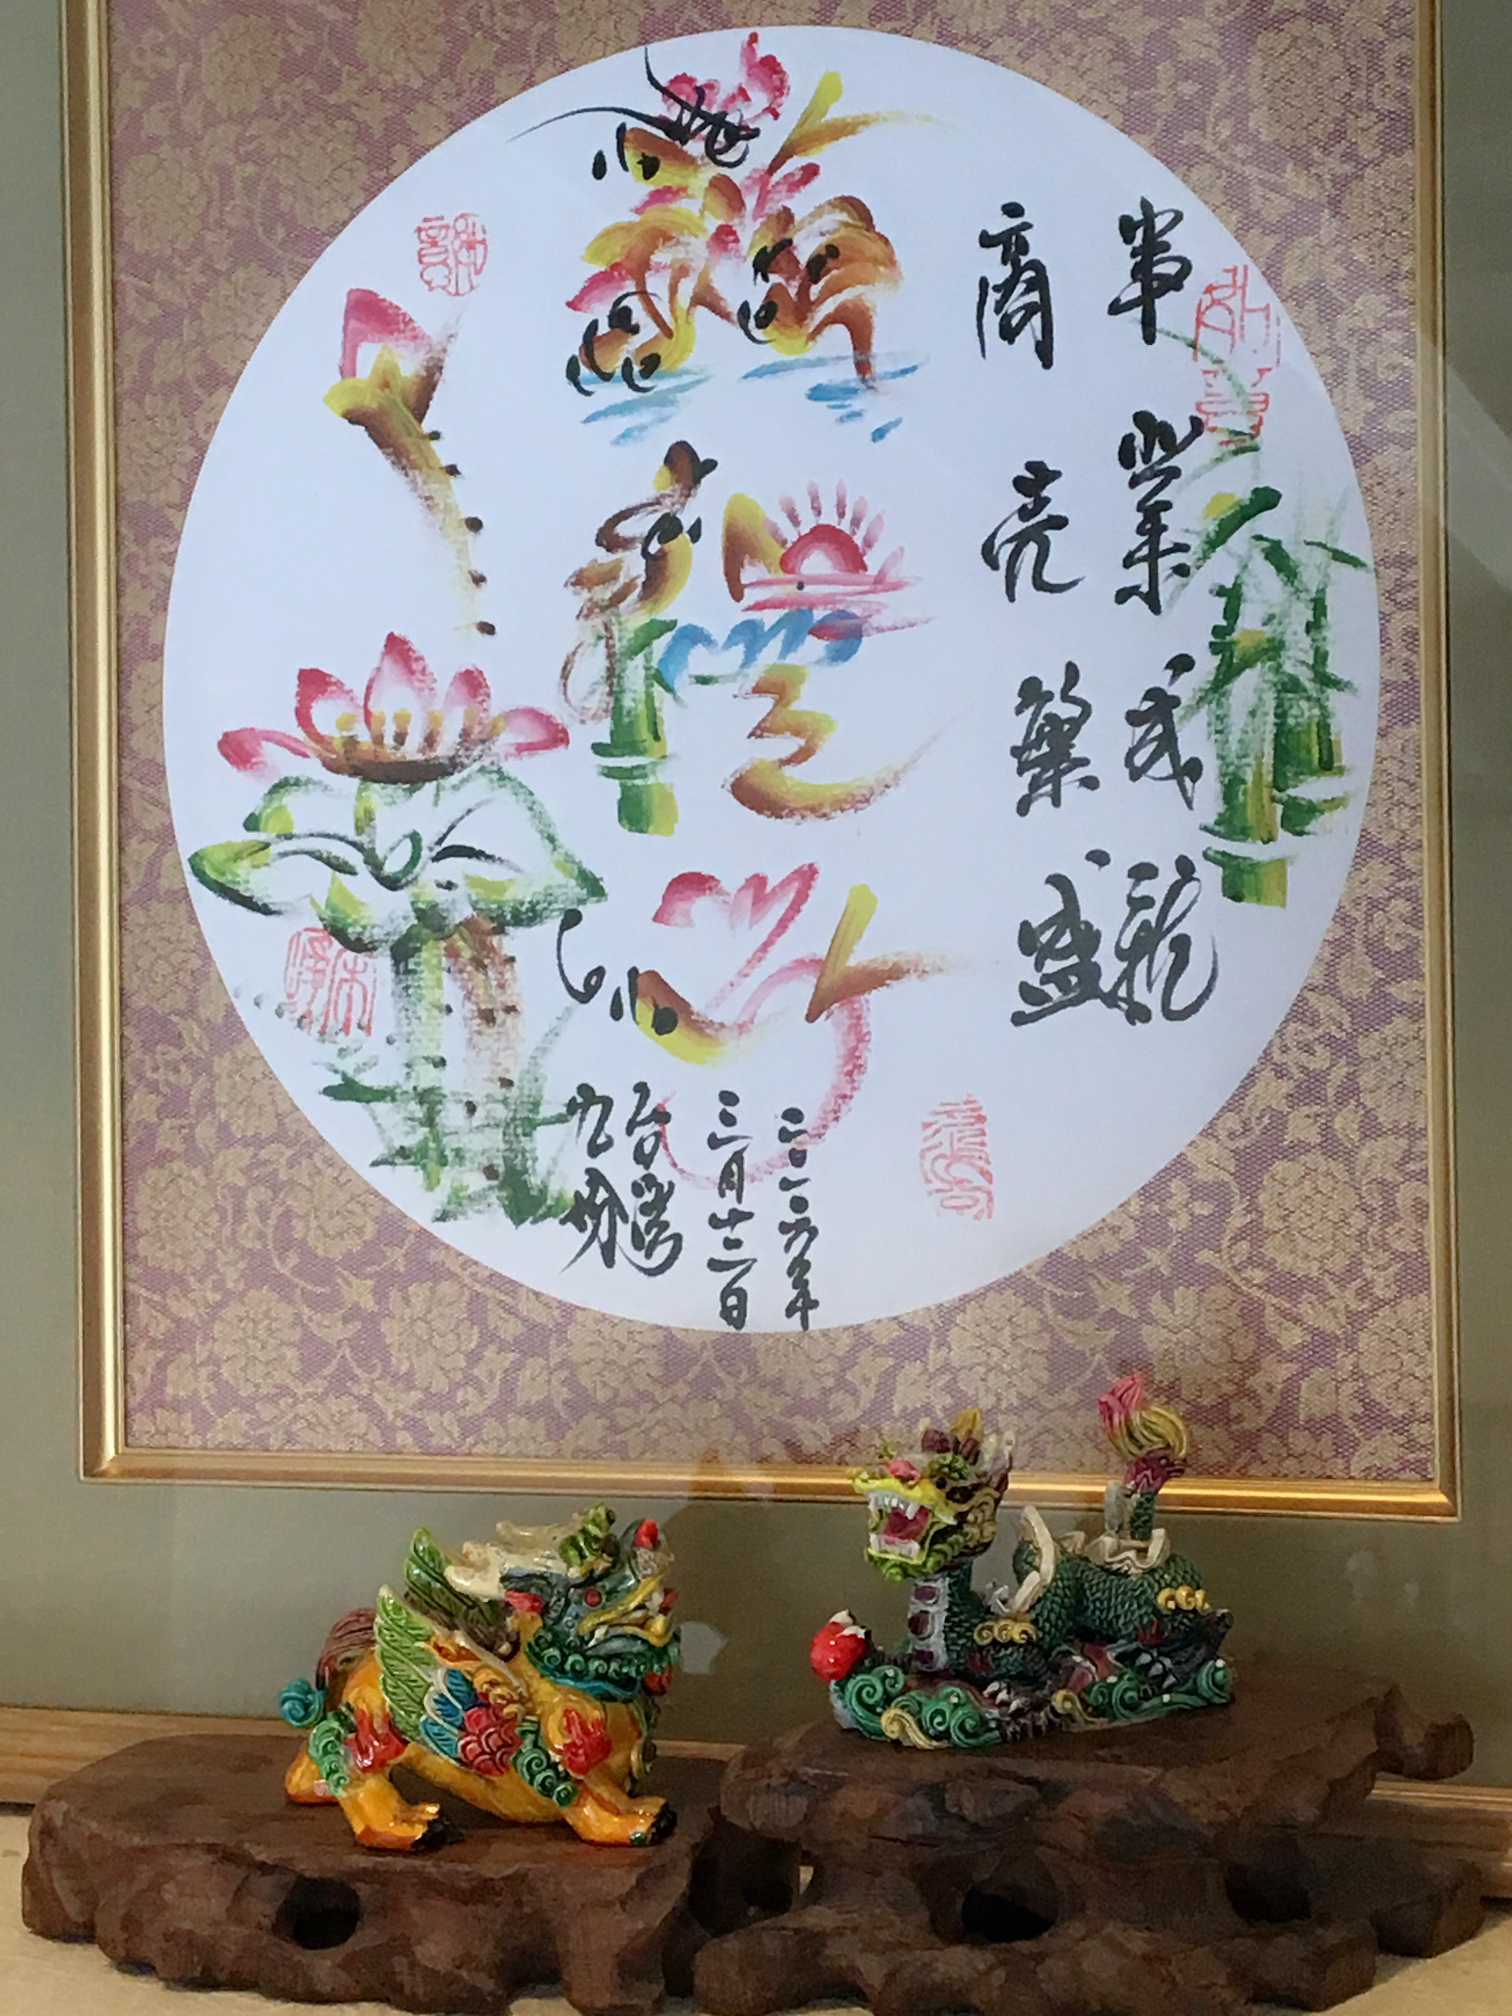 台湾で書いてもらった花文字とミニ獅子と龍が、お客様をお迎えする今日の当番です！